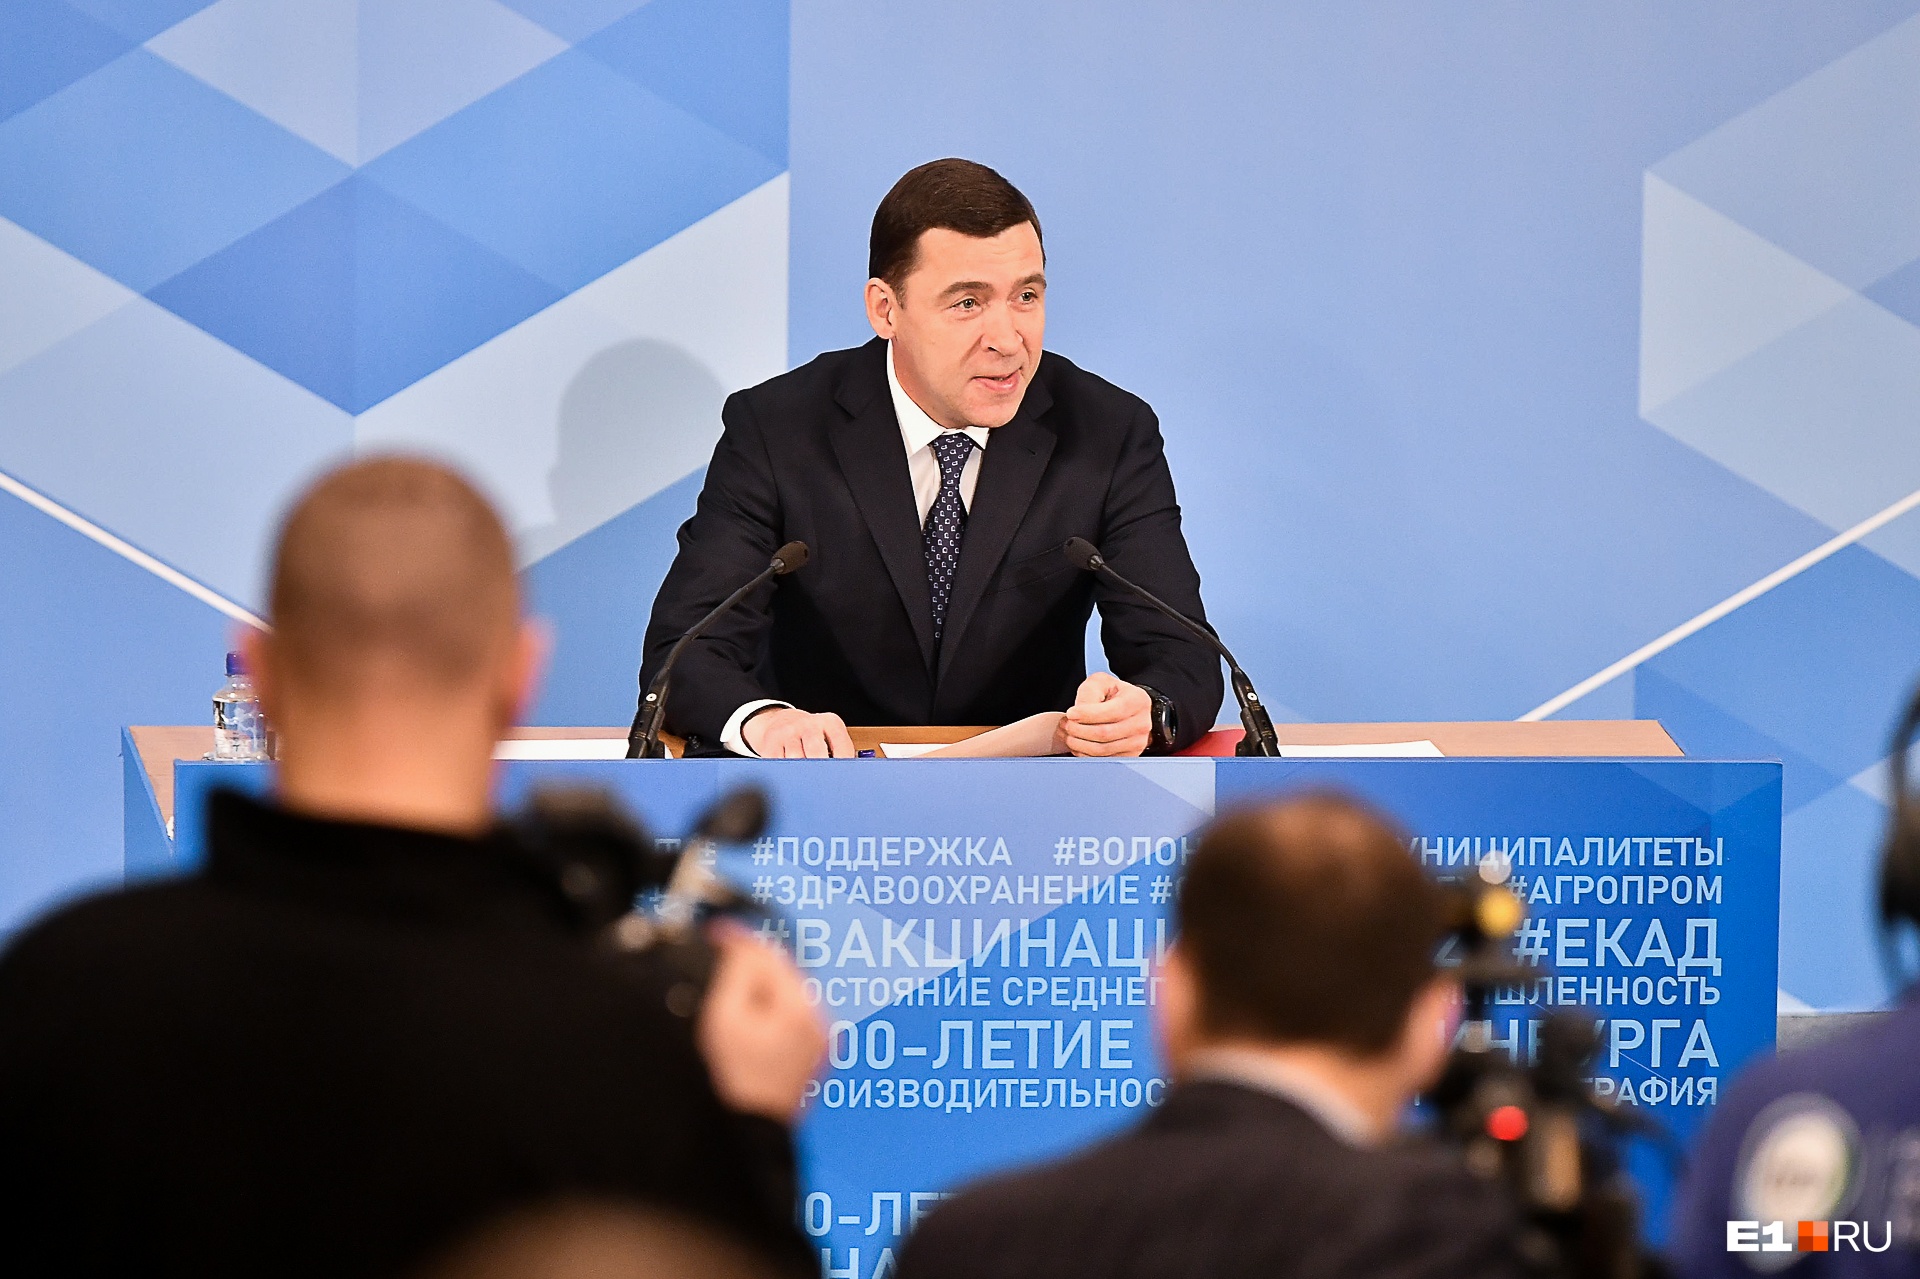 Куйвашев впервые сделал заявление о войне на Украине. Губернатор обратился к промышленникам